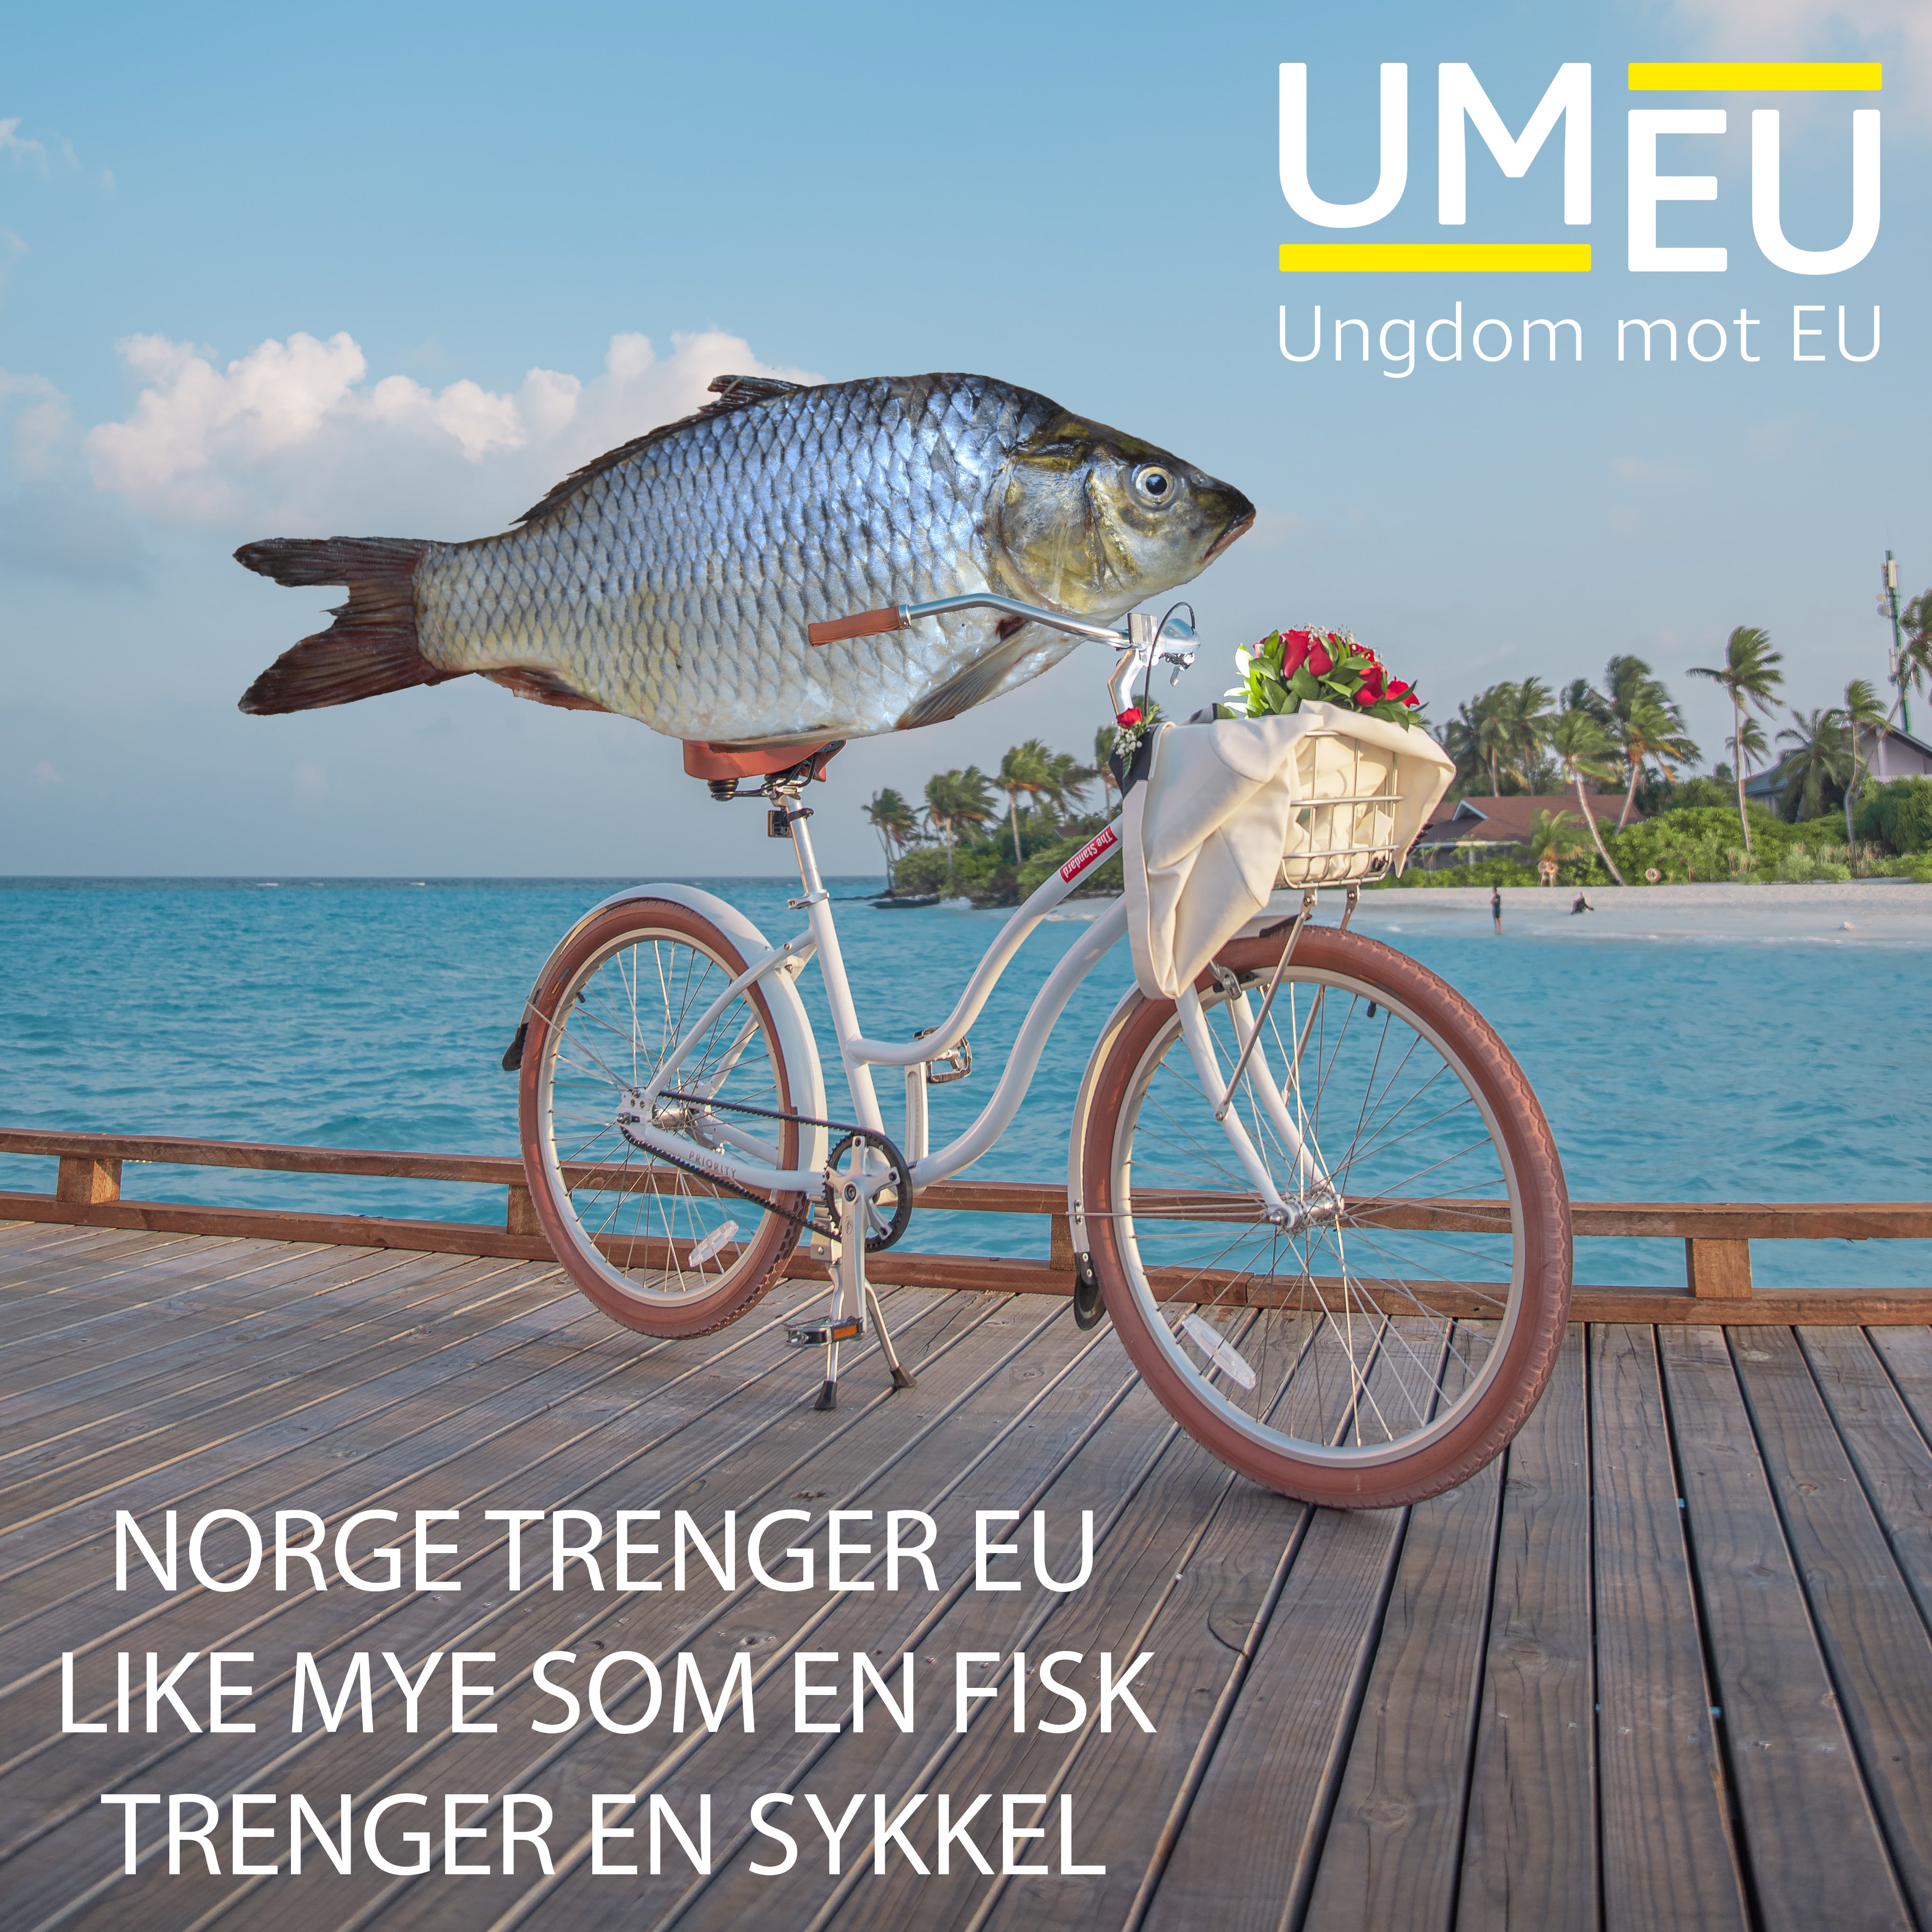 Norge trenger eu like mye som en fisk trenger en sykkel